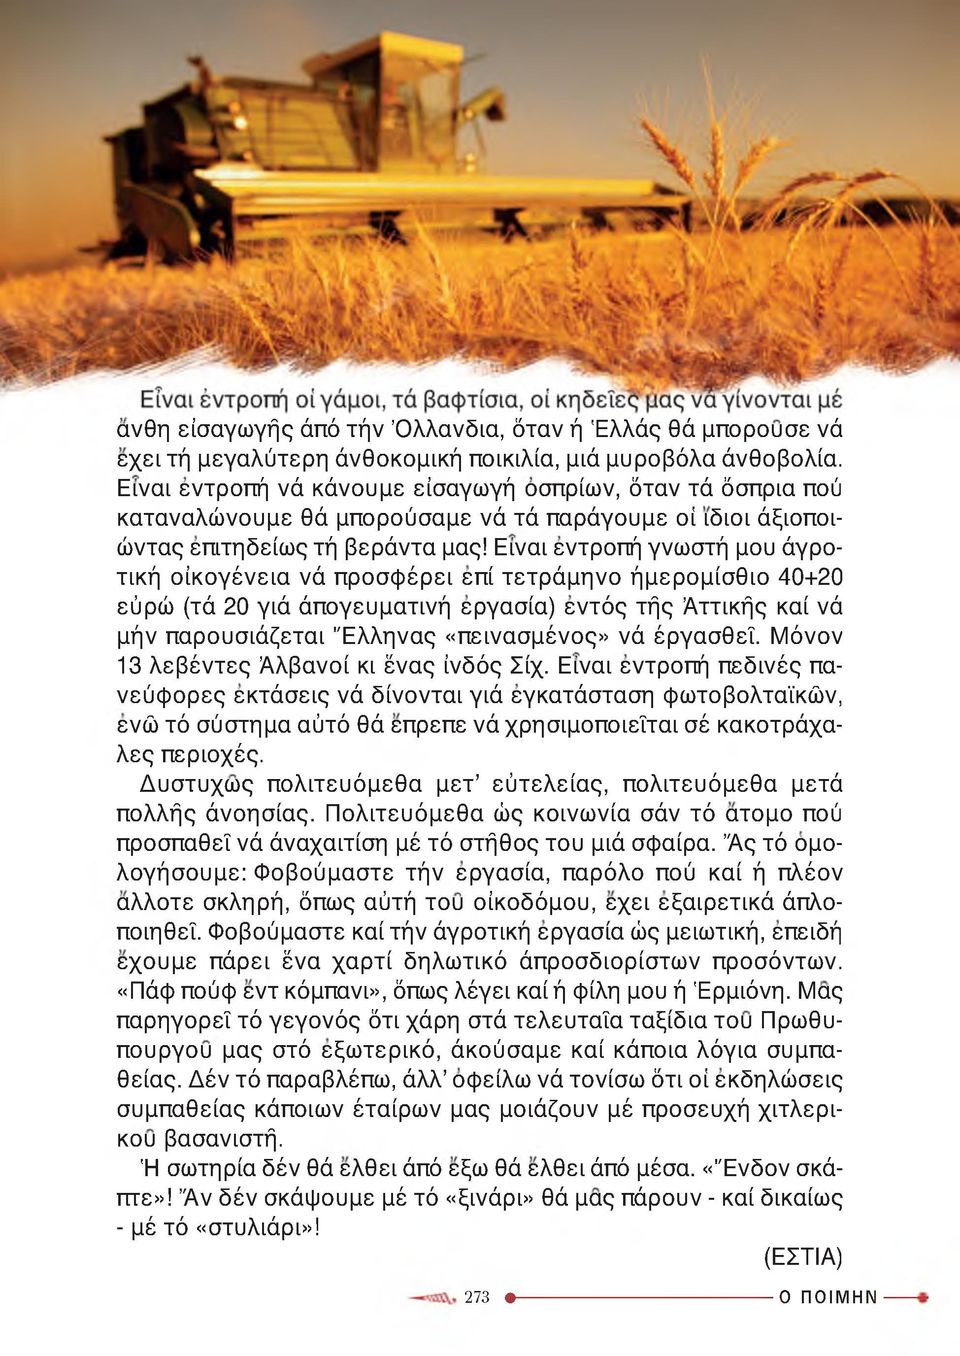 Είναι εντροπή γνωστή μου άγροτική οικογένεια νά προσφέρει επί τετράμηνο ήμερομίσθιο 40+20 εύρώ (τά 20 γιά άπογευματινή εργασία) εντός τής Αττικής καί νά μήν παρουσιάζεται Έλληνας «πεινασμένος» νά